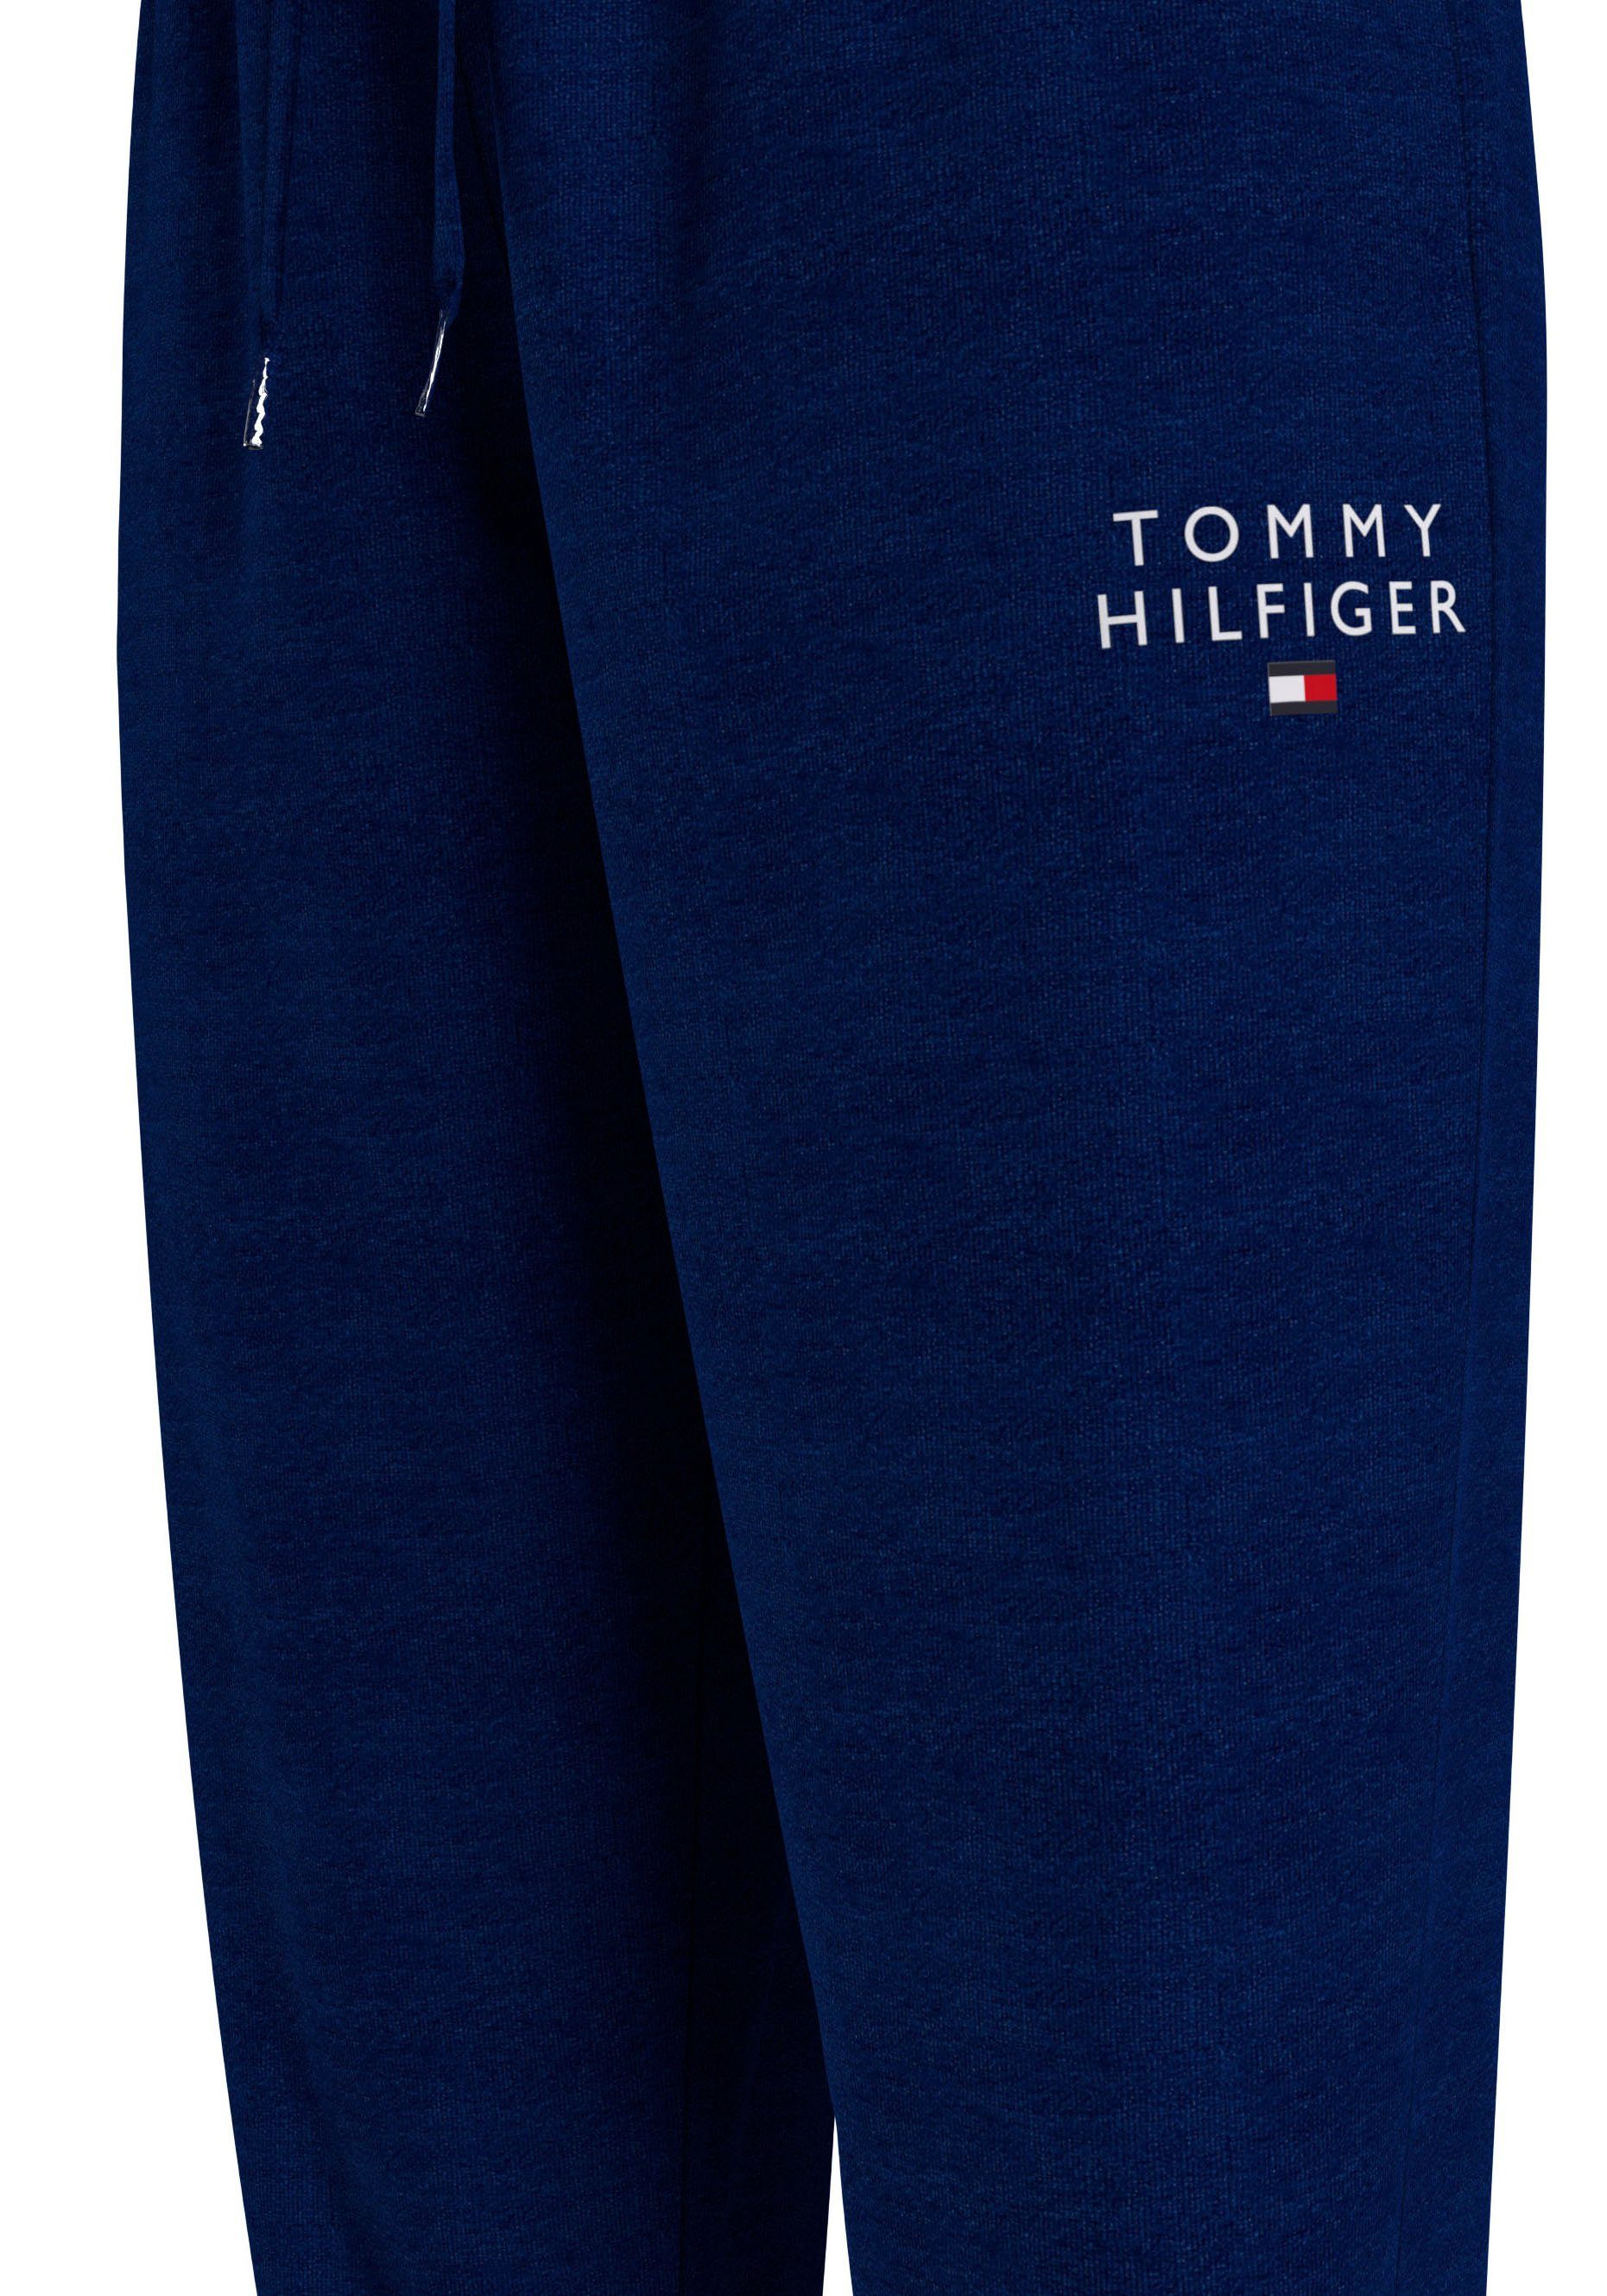 Tommy Hilfiger Tommy mit Hilfiger Markenlogo-Aufdruck Underwear PANTS TRACK Sweathose